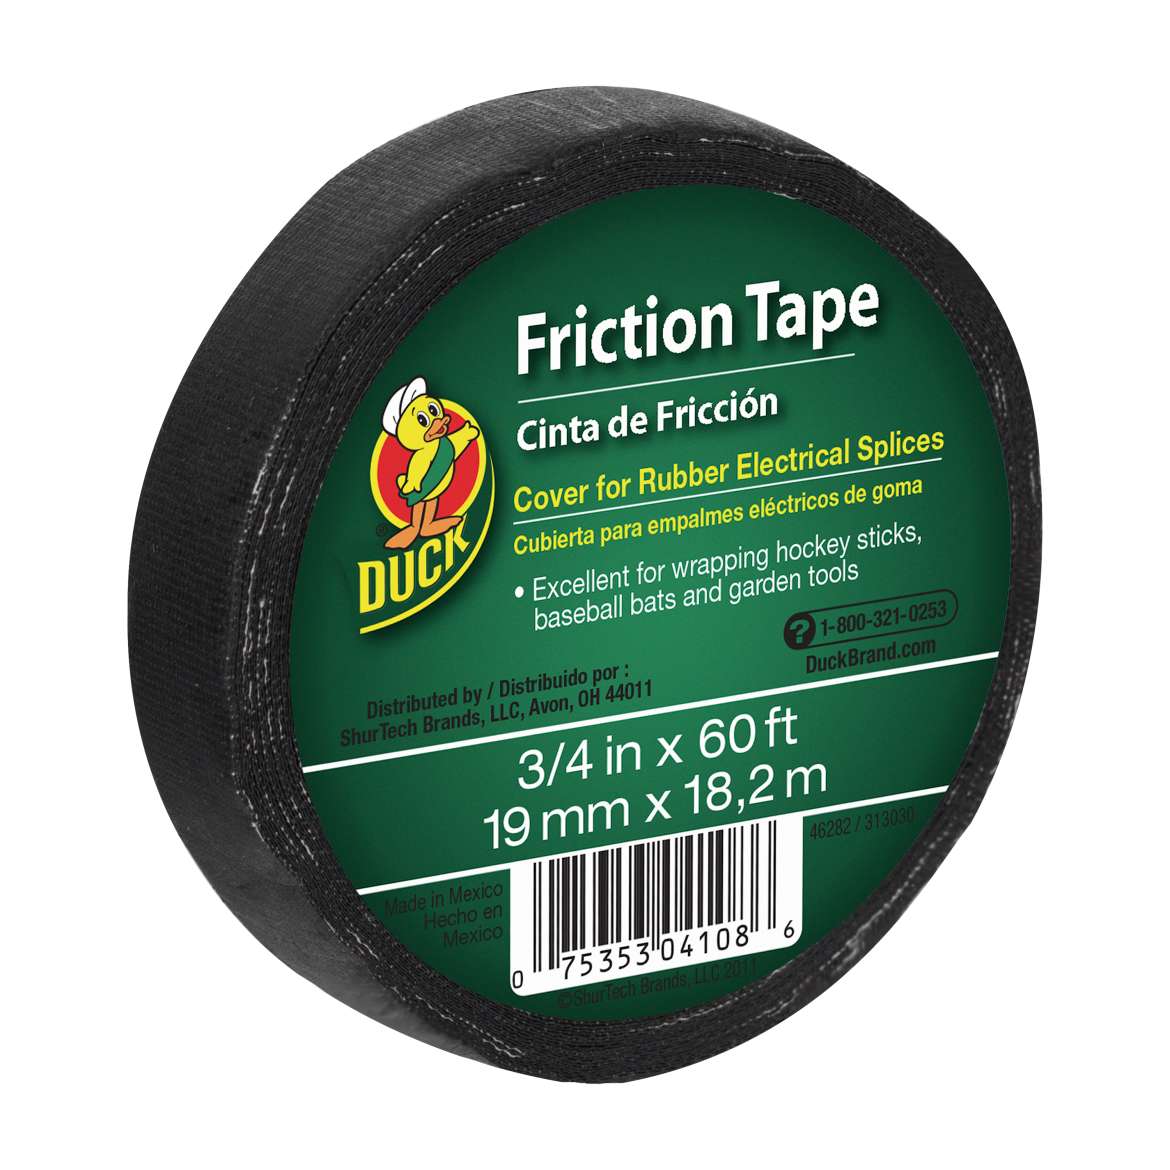 Friction Tape Image